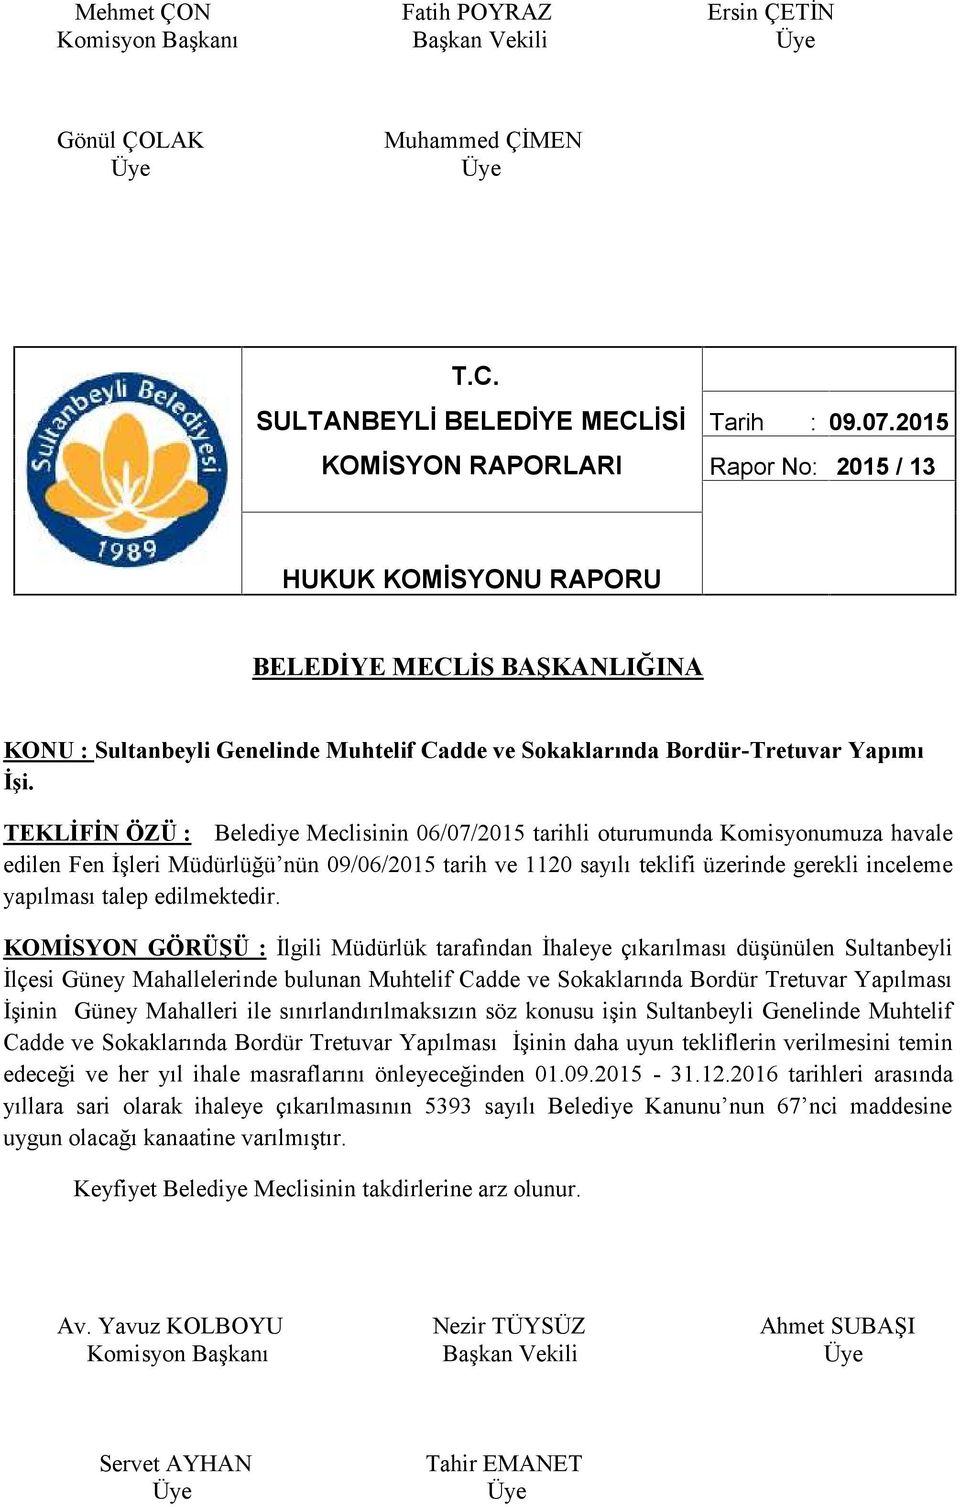 TEKLİFİN ÖZÜ : Belediye Meclisinin 06/07/2015 tarihli oturumunda Komisyonumuza havale edilen Fen İşleri Müdürlüğü nün 09/06/2015 tarih ve 1120 sayılı teklifi üzerinde gerekli inceleme yapılması talep